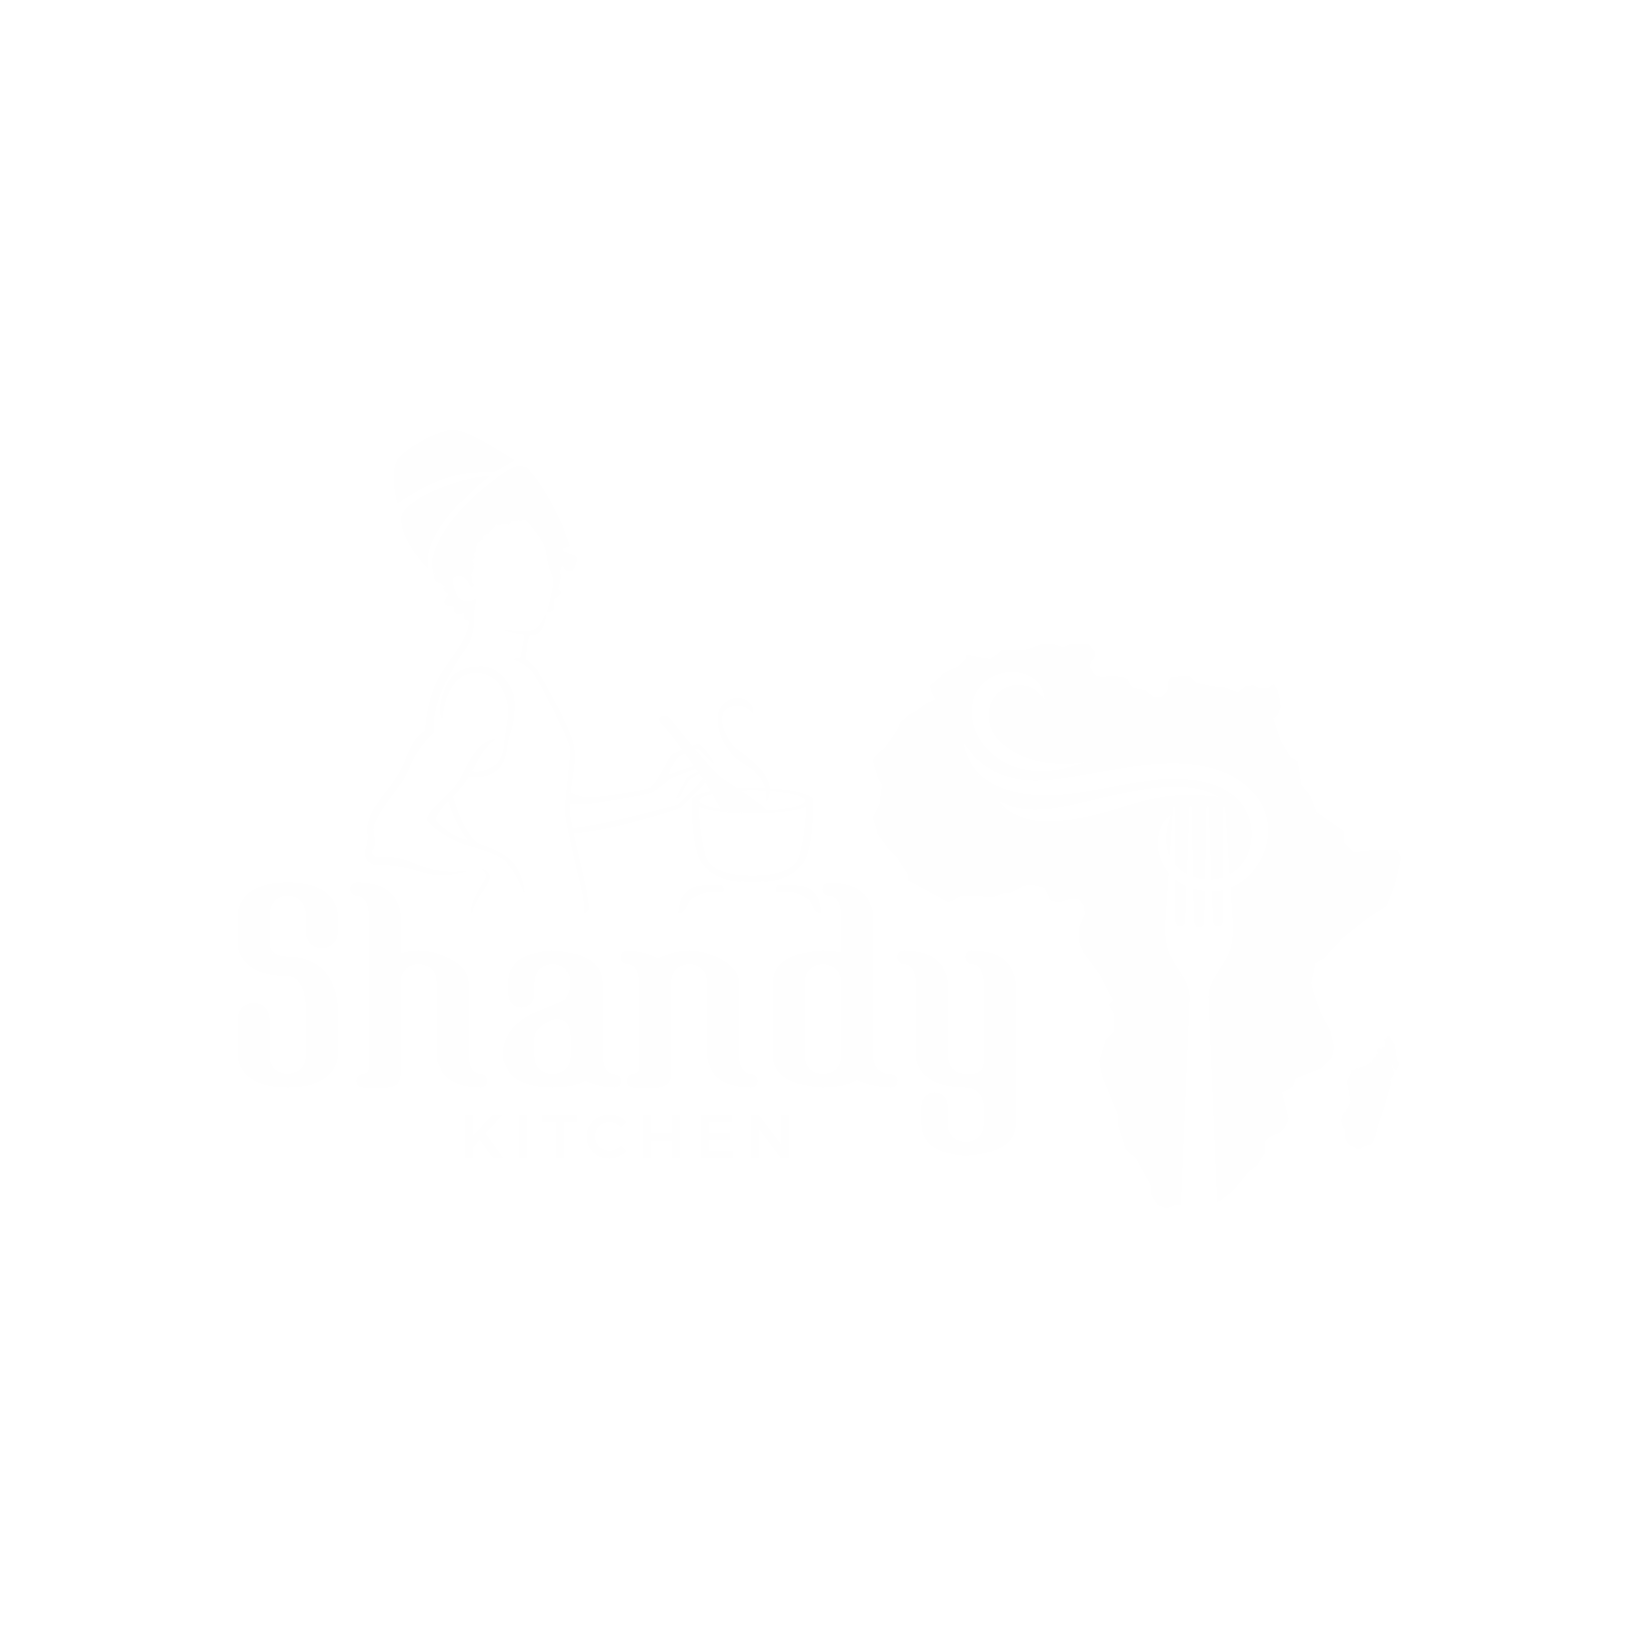 Shandy Kitchen